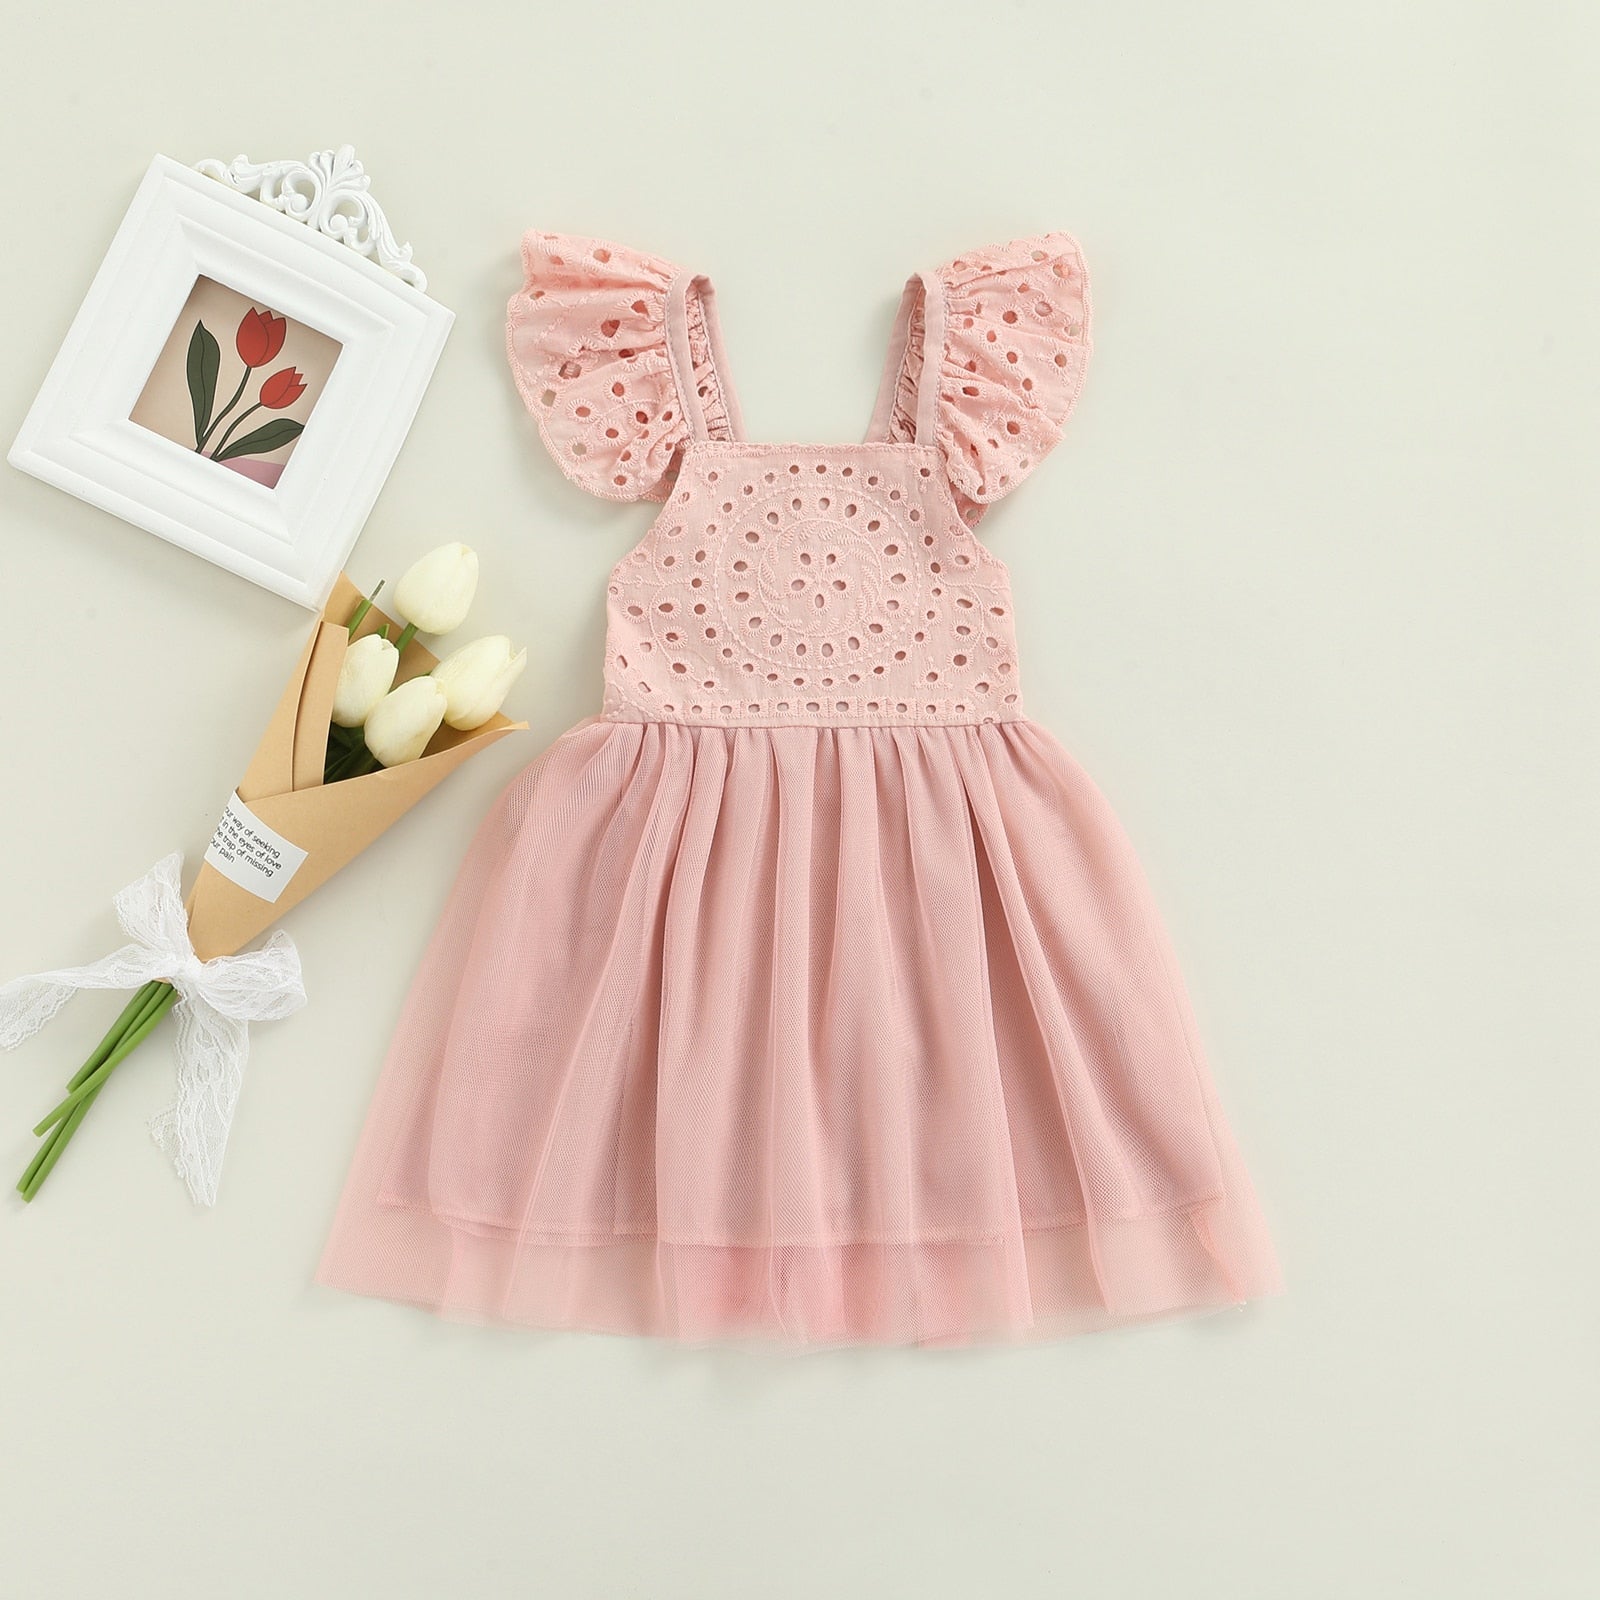 Vestido Infantil Lese vestido Loja Click Certo Rosa Tule 2-3 anos 54cm 